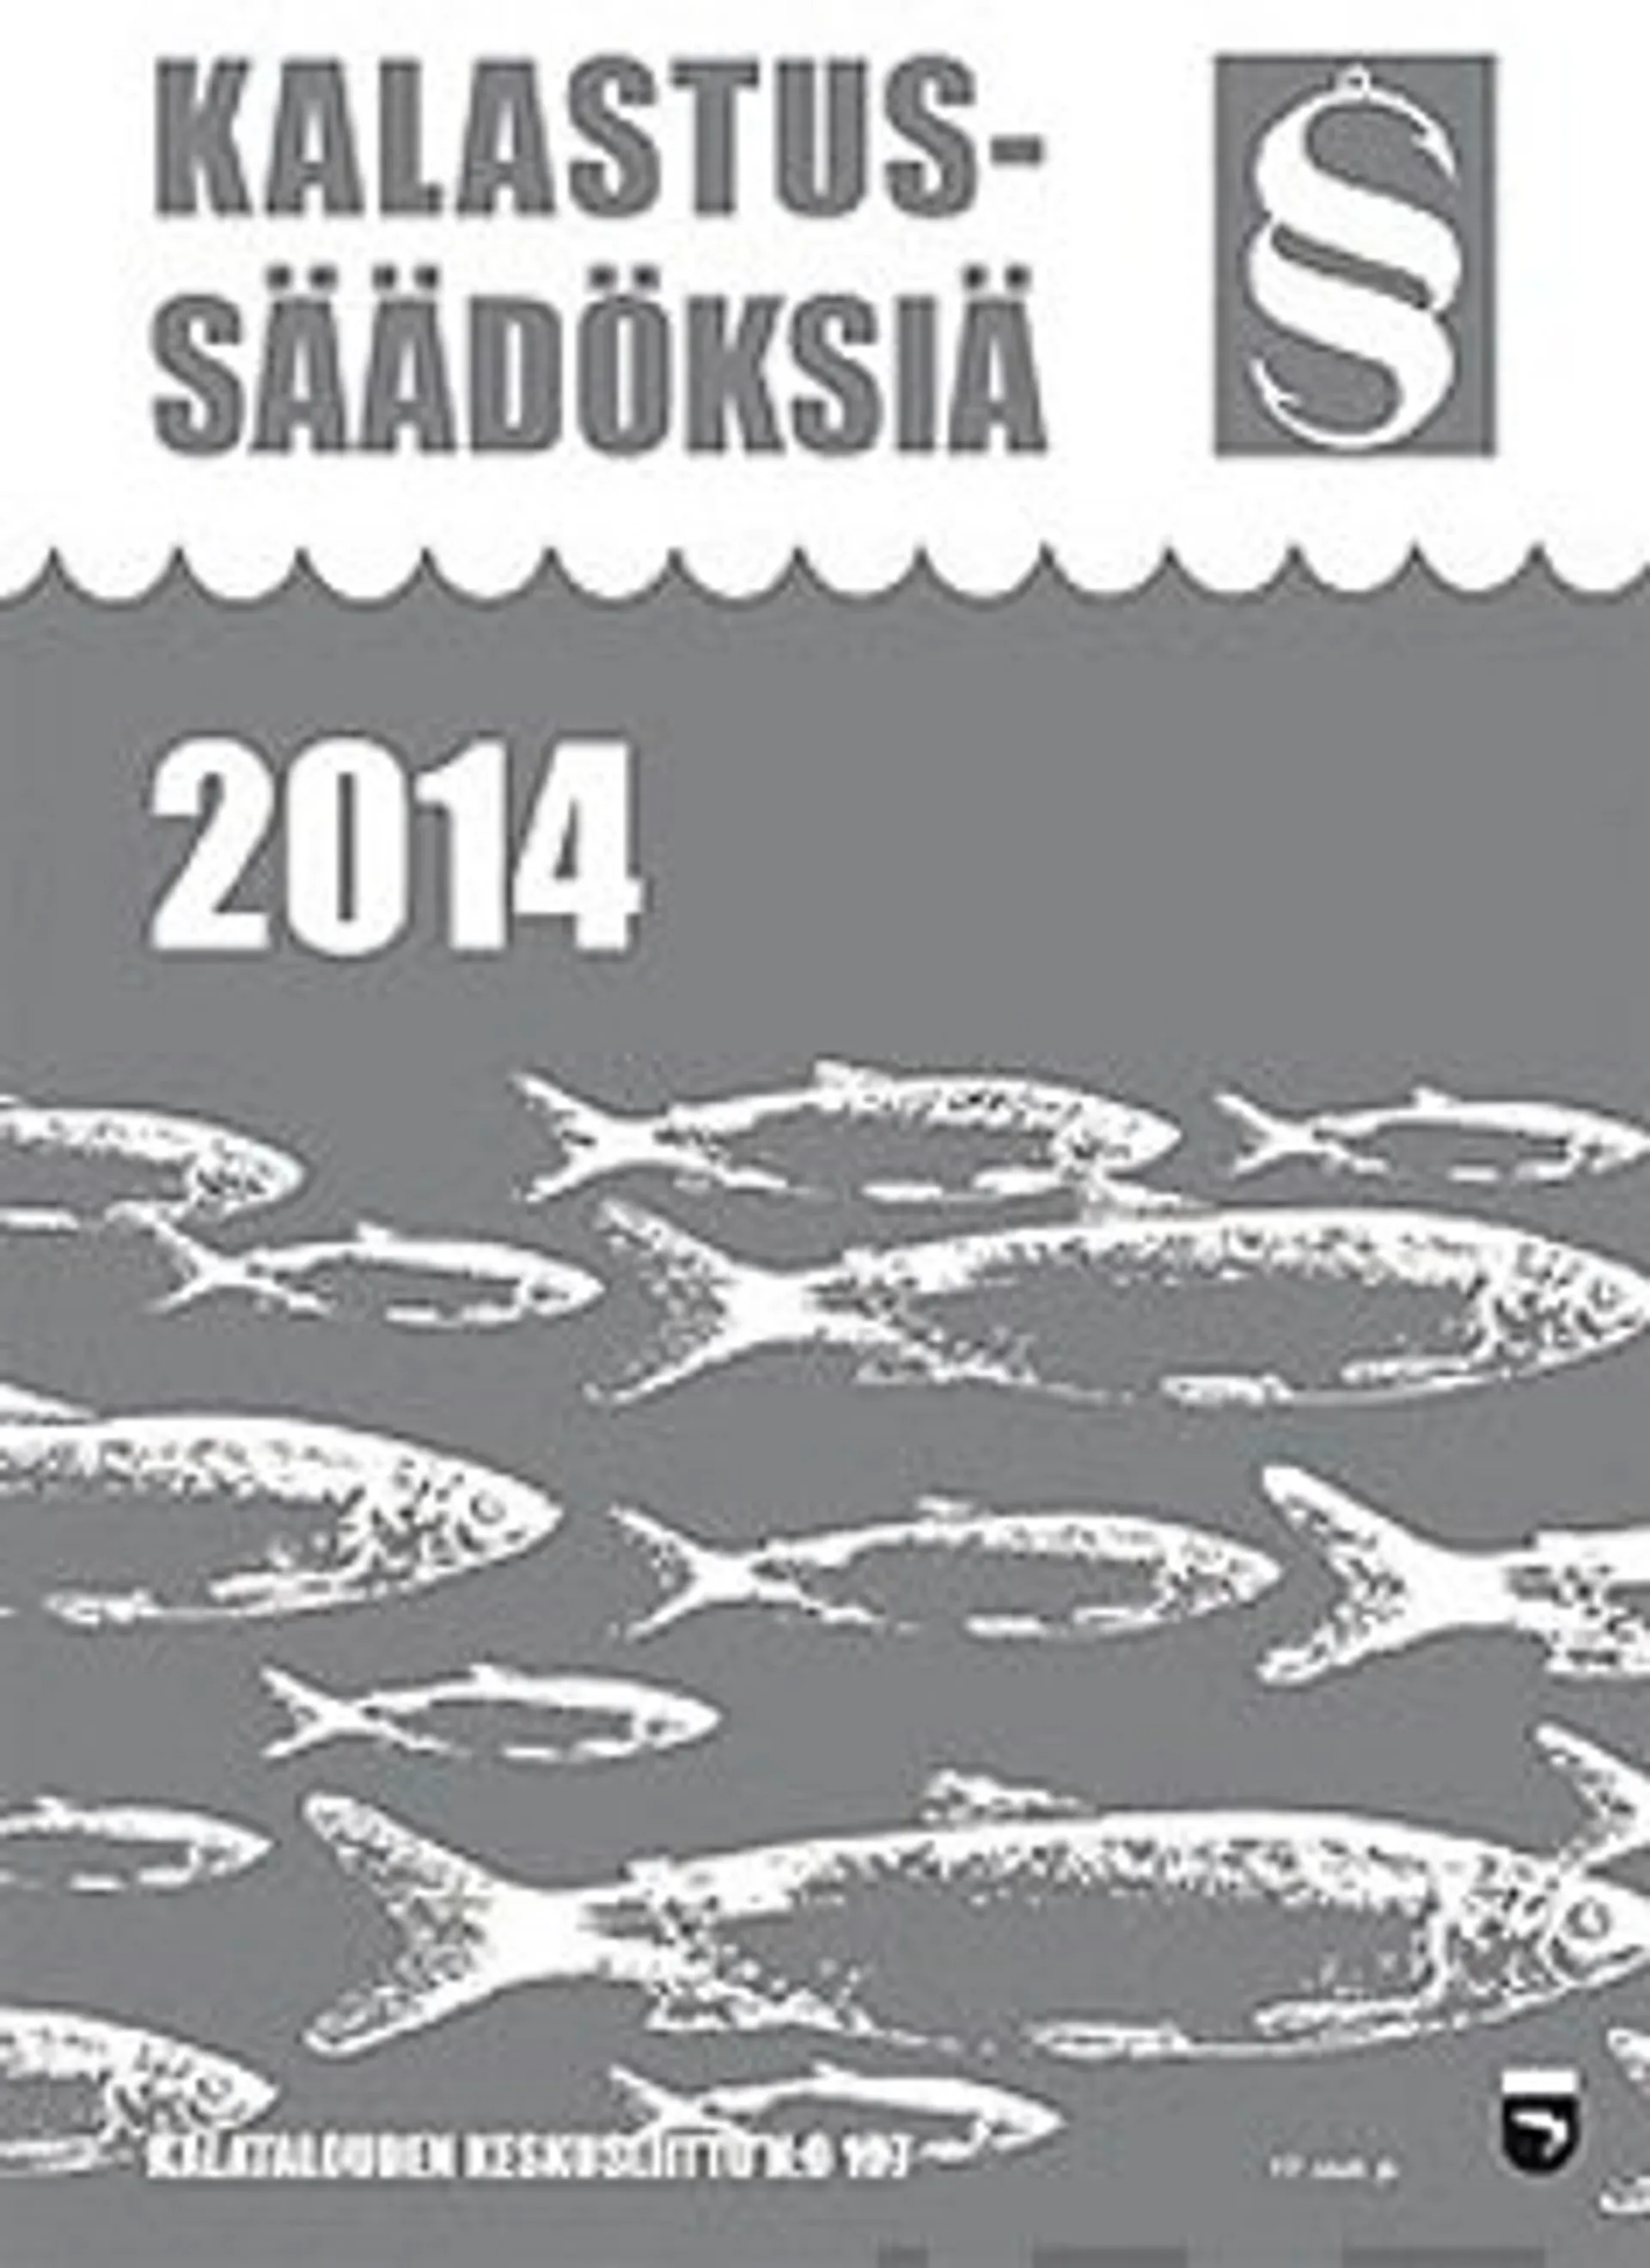 Kalastussäädöksiä 2014